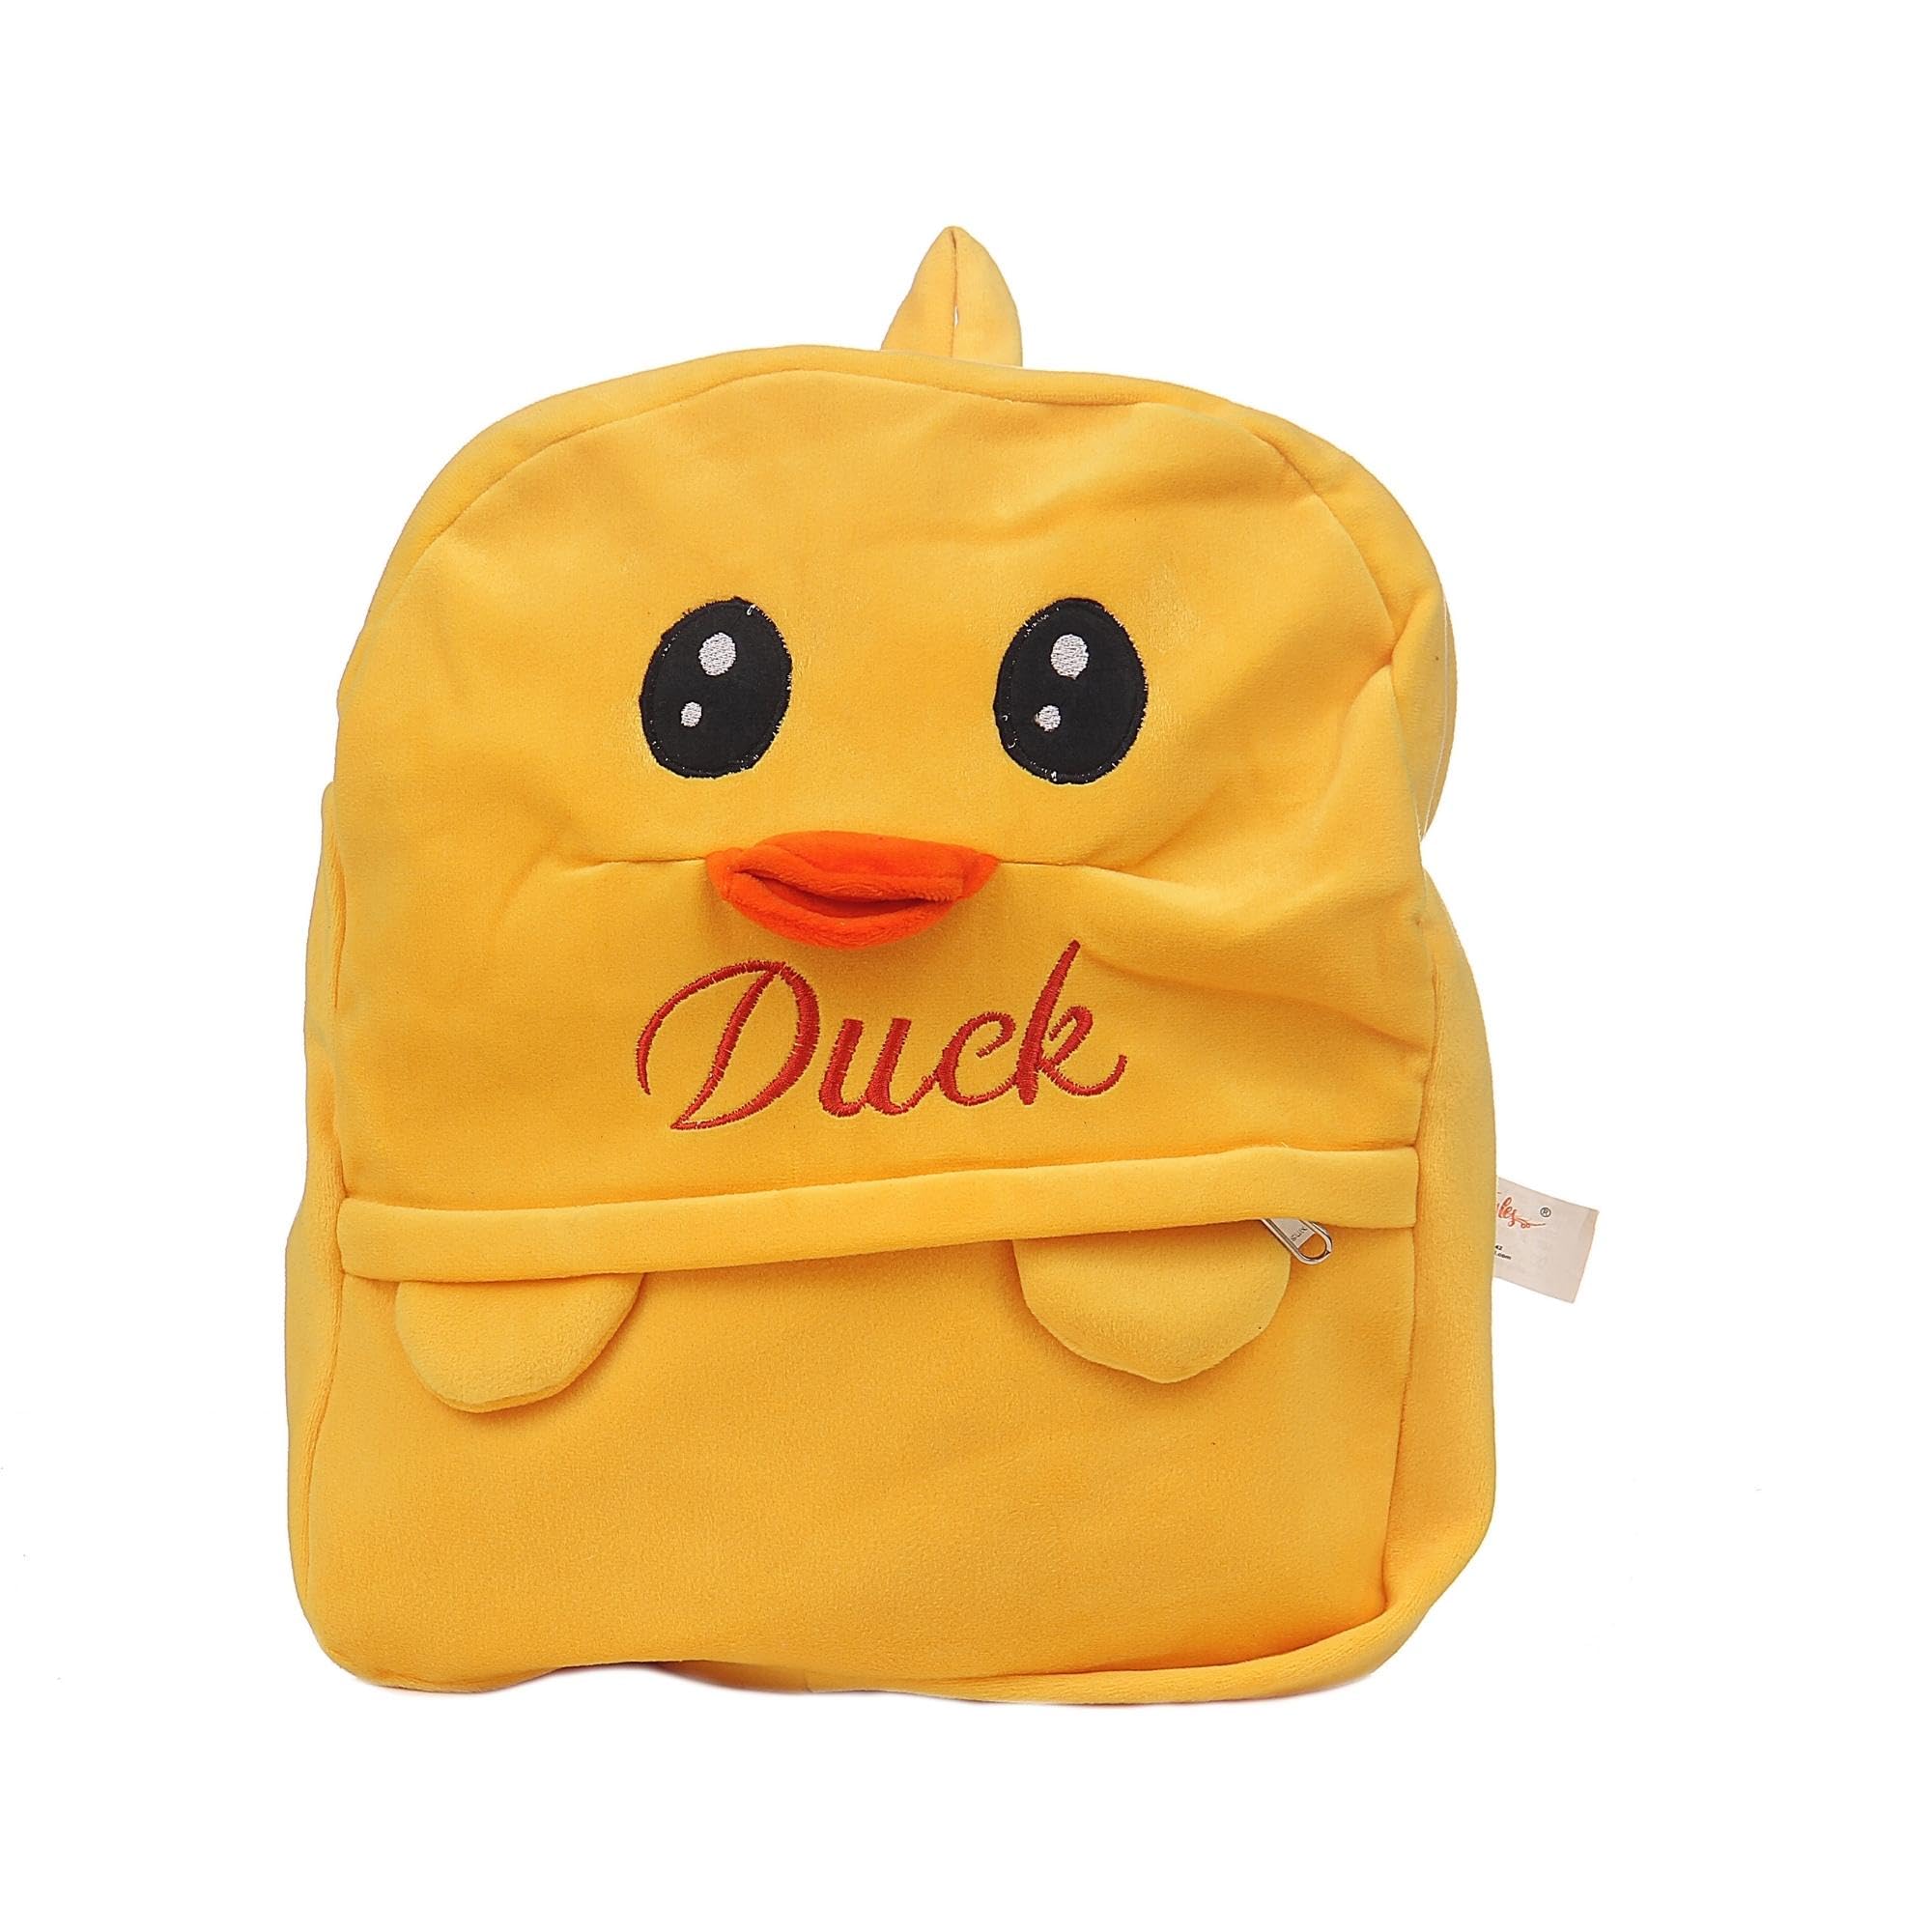 TOYTALES Cute Duck Bag for Kids | Backpack for Nursery Children,Soft Velvet Cartoon Animal Plush Preschool | Mini Travel Bags for Baby Girl & Baby Boy | Ideal for Girls, Boys & Toddlers (2-5 Years)